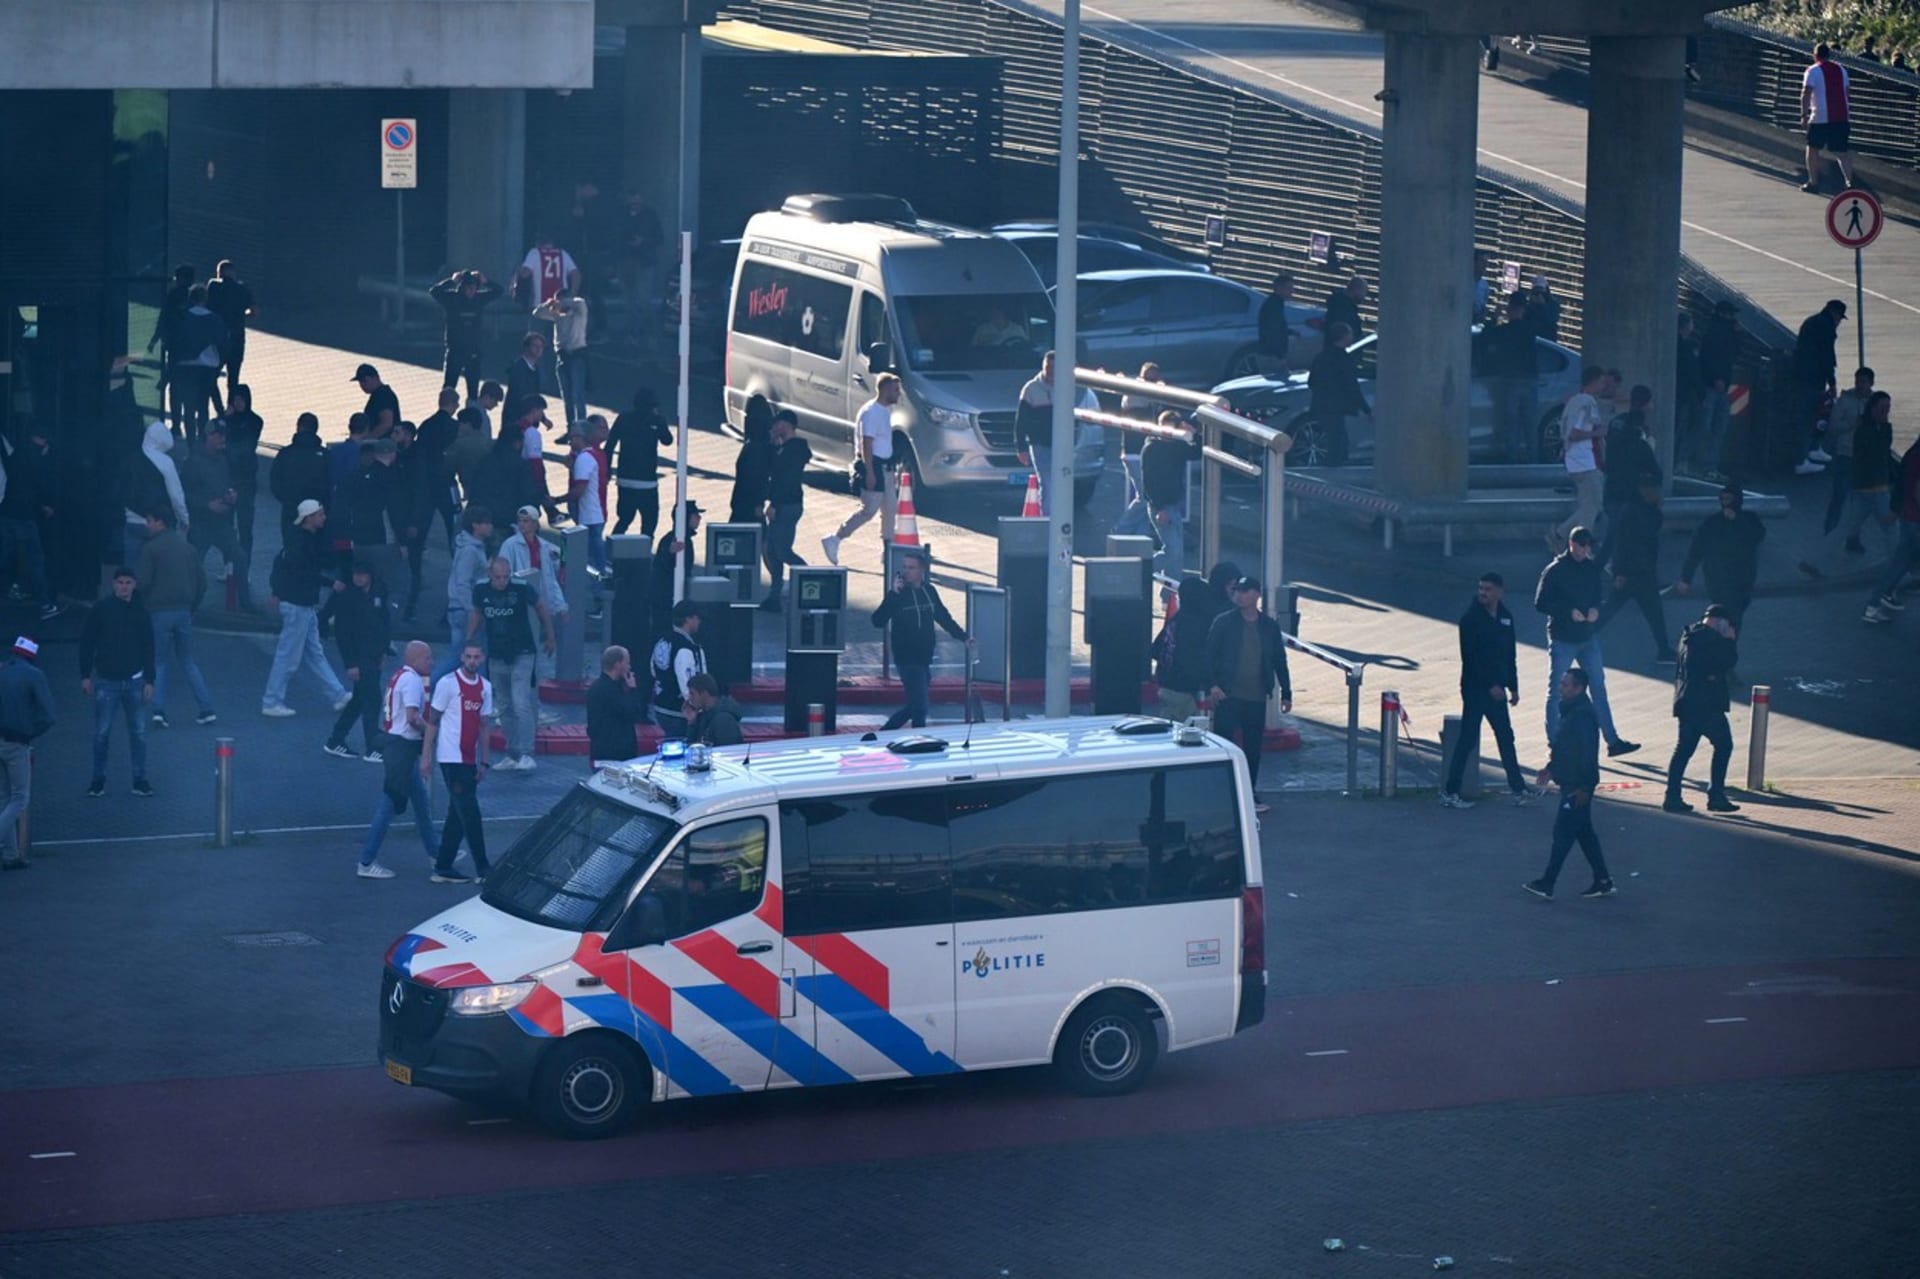 Kvůli chování fanoušků se v nizozemské fotbalové lize nedohrál šlágr 6. kola mezi domácím Ajaxem Amsterodam a Feyenoordem Rotterdam. 